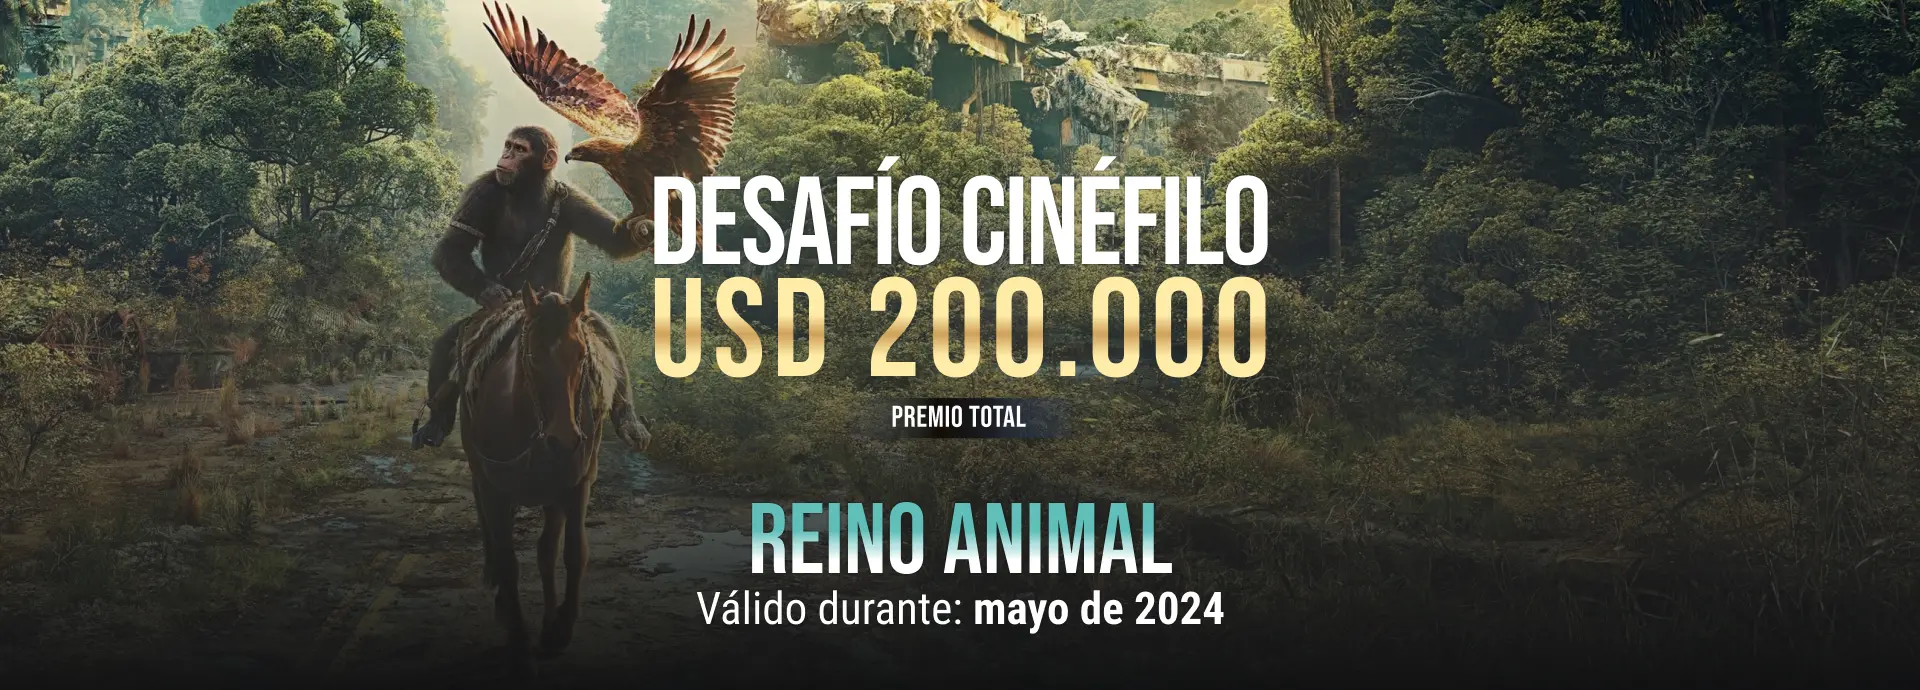 Desafio cinefilo mayo 2024: Reino animal, premio 200 mil USD